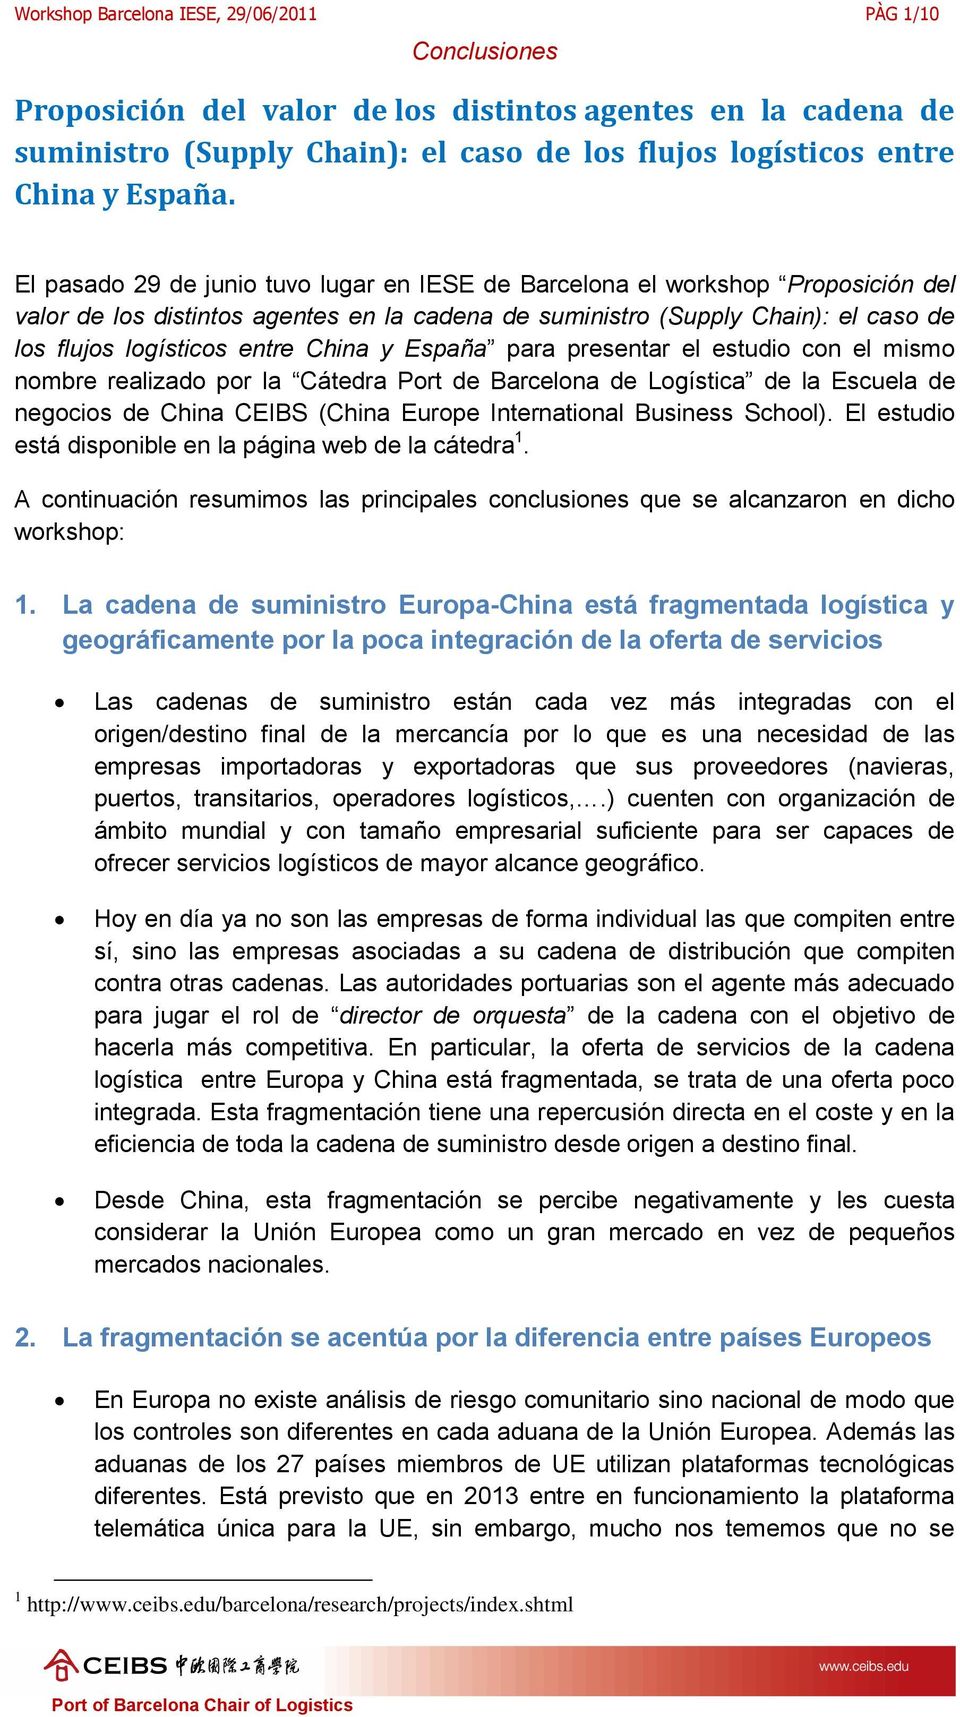 presentar el estudi cn el mism nmbre realizad pr la Cátedra Prt de Barcelna de Lgística de la Escuela de negcis de China CEIBS (China Eurpe Internatinal Business Schl).